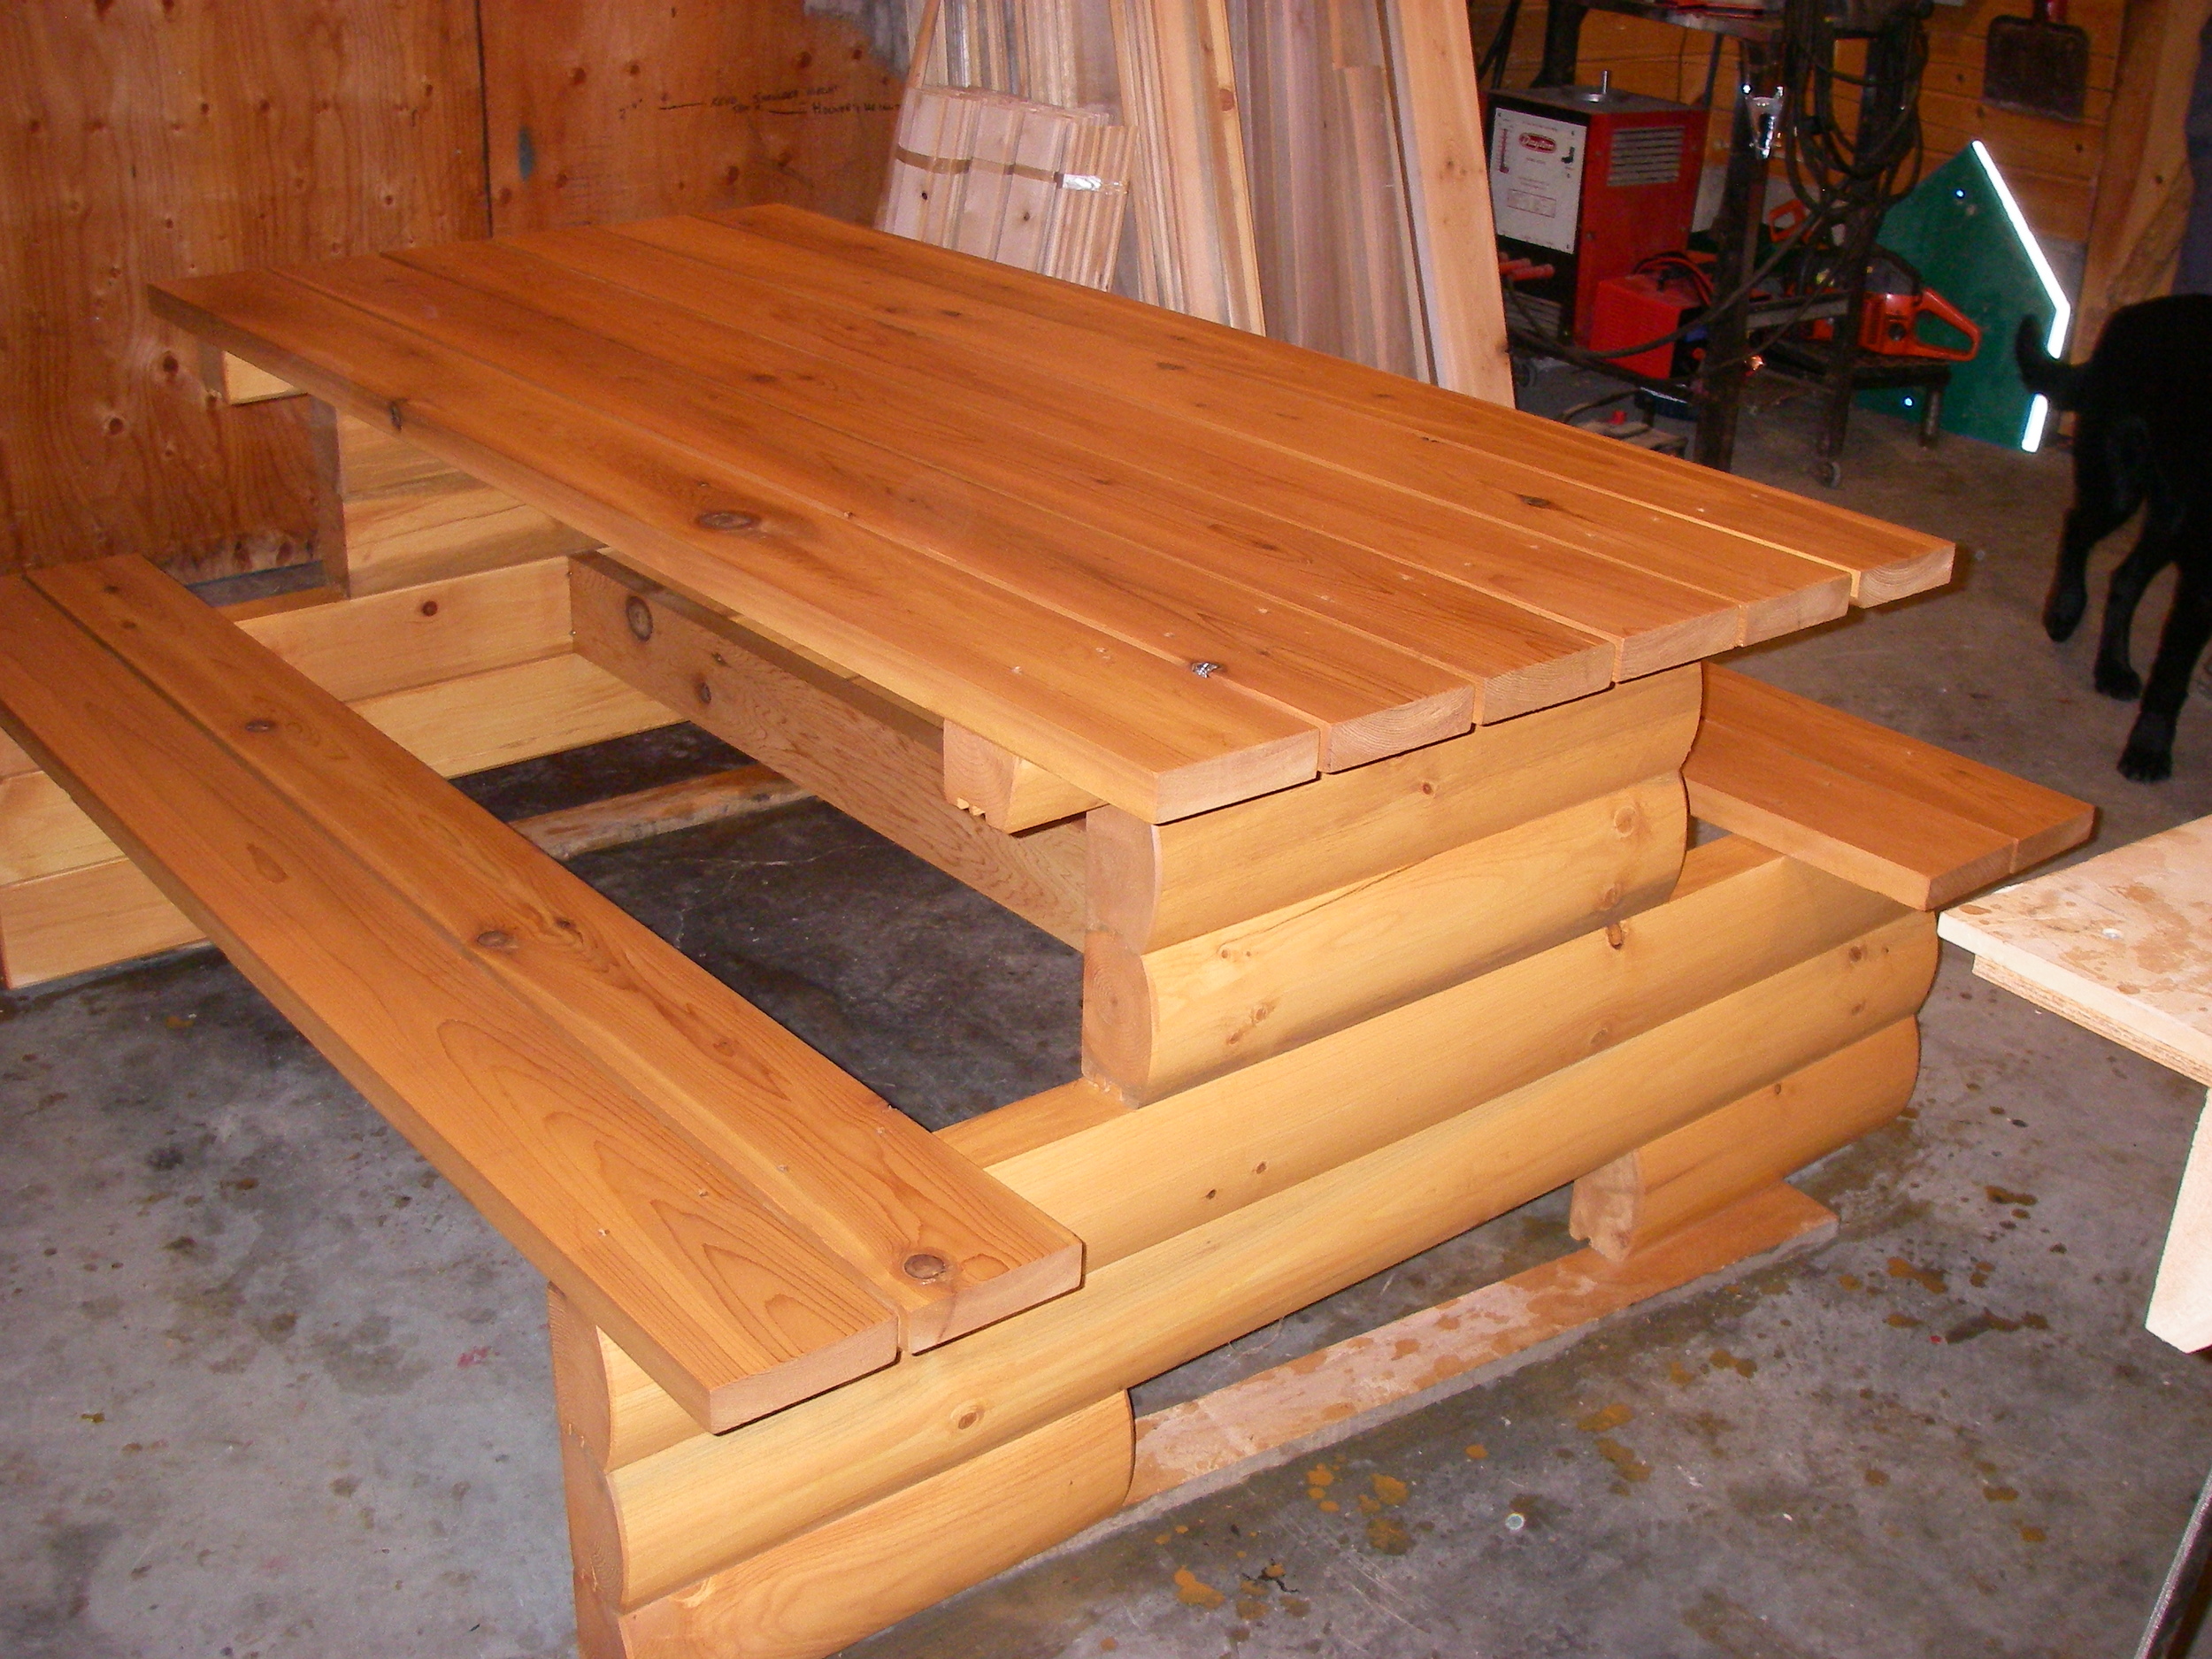  Pine log picnic table 